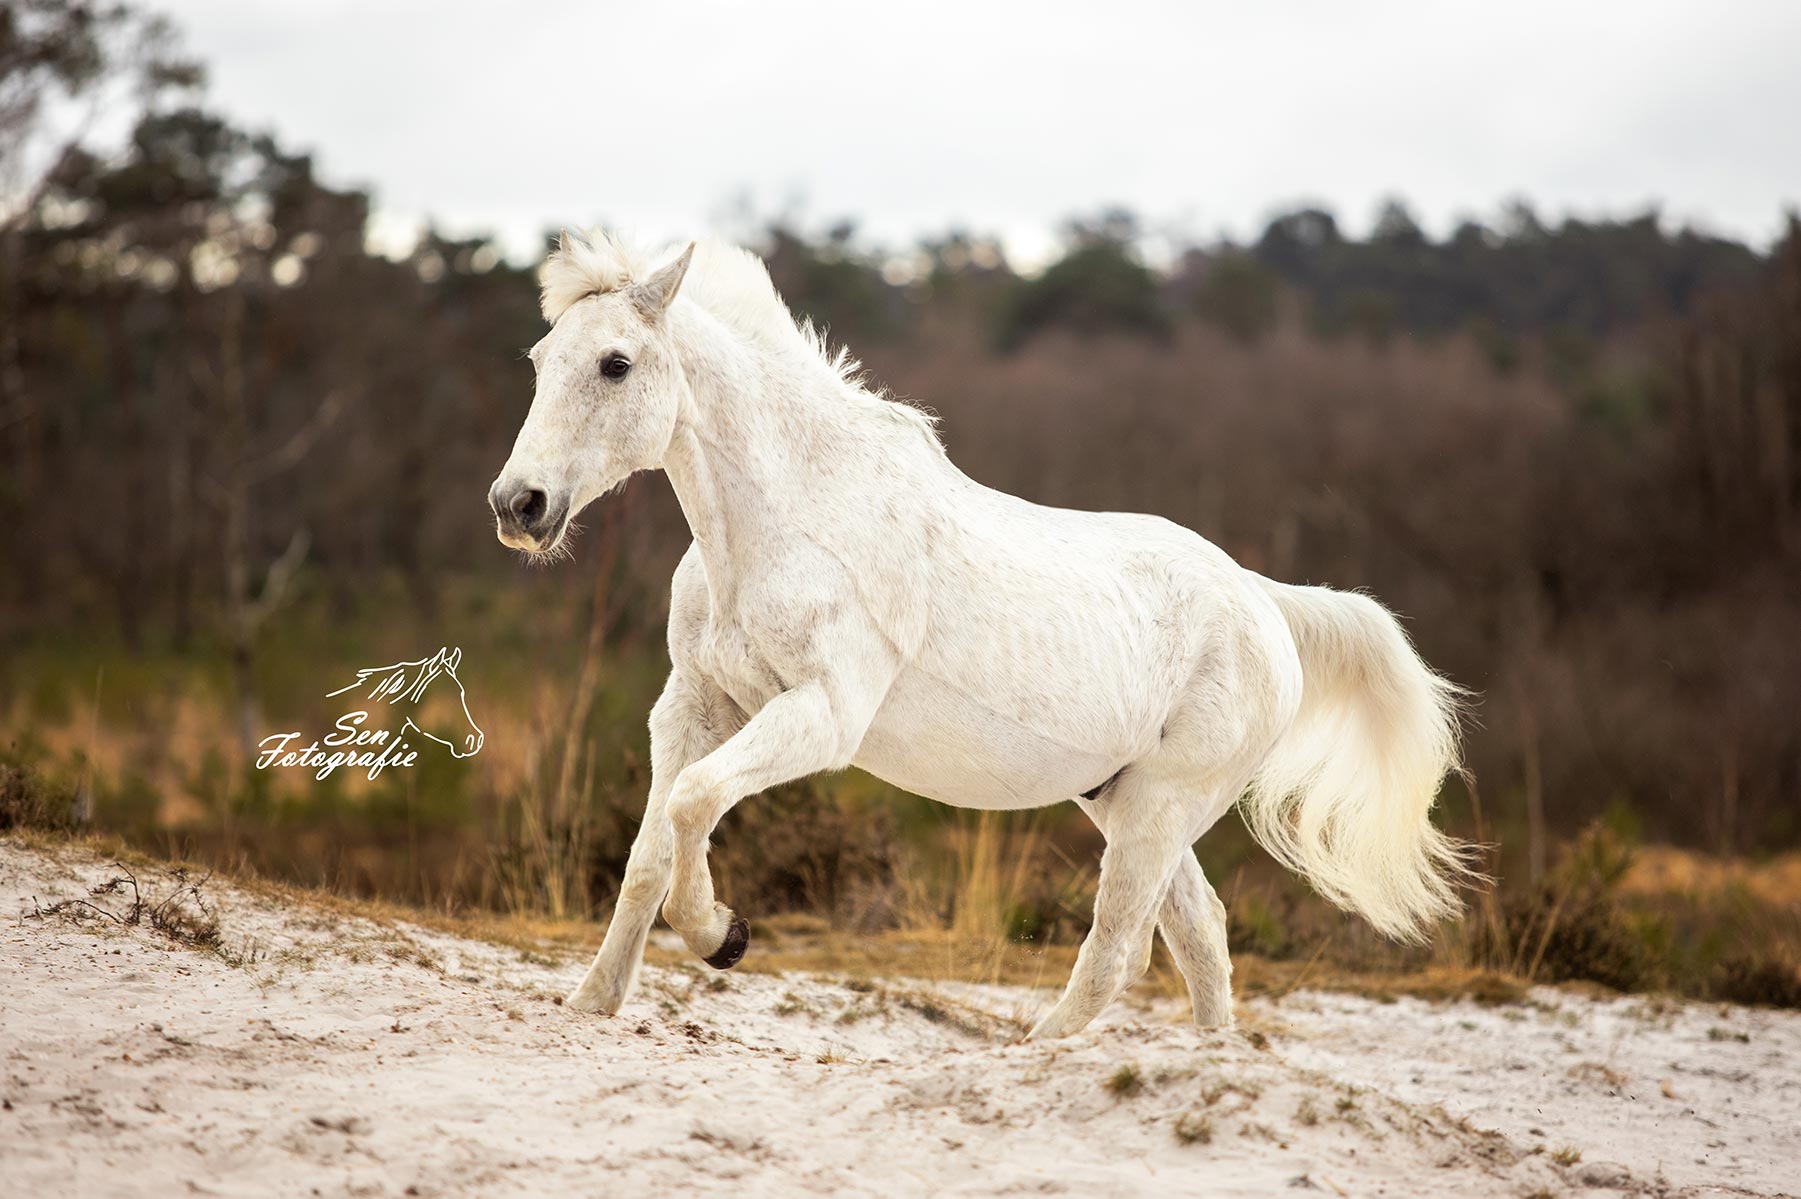 Actiefoto paard, onderdeel van aanbod Sen Fotografie